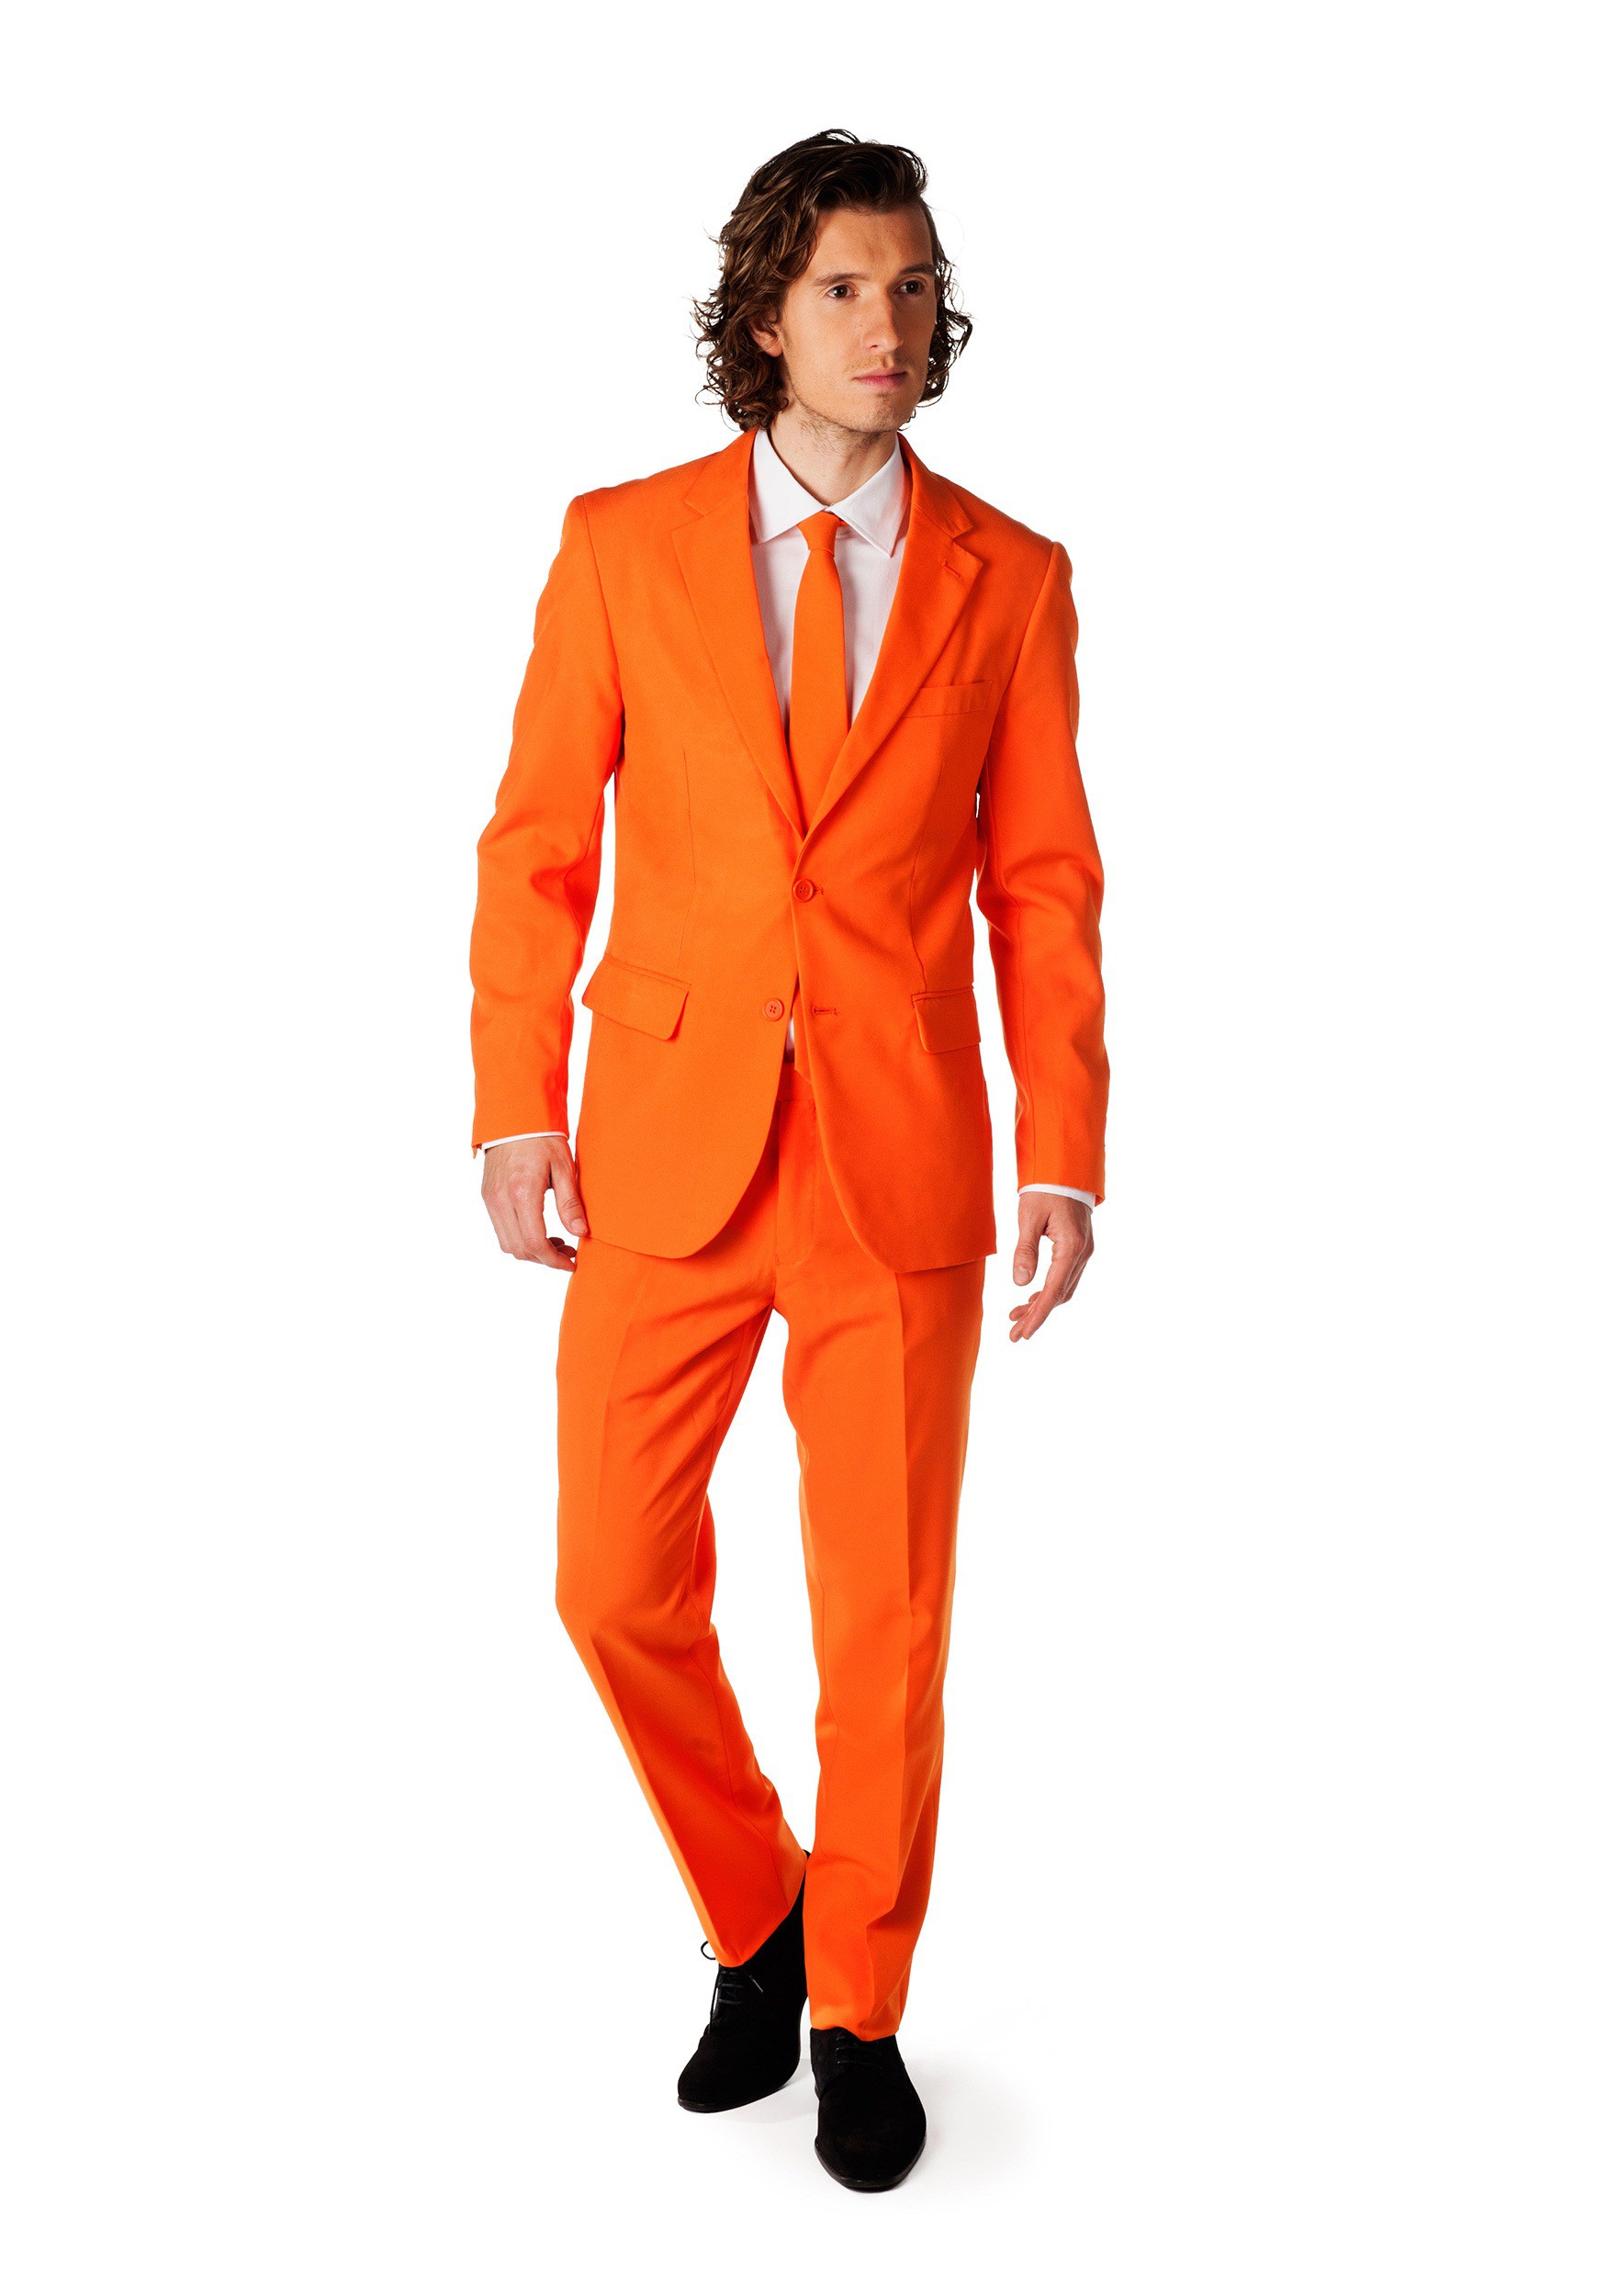 Men's OppoSuits Orange Costume Suit